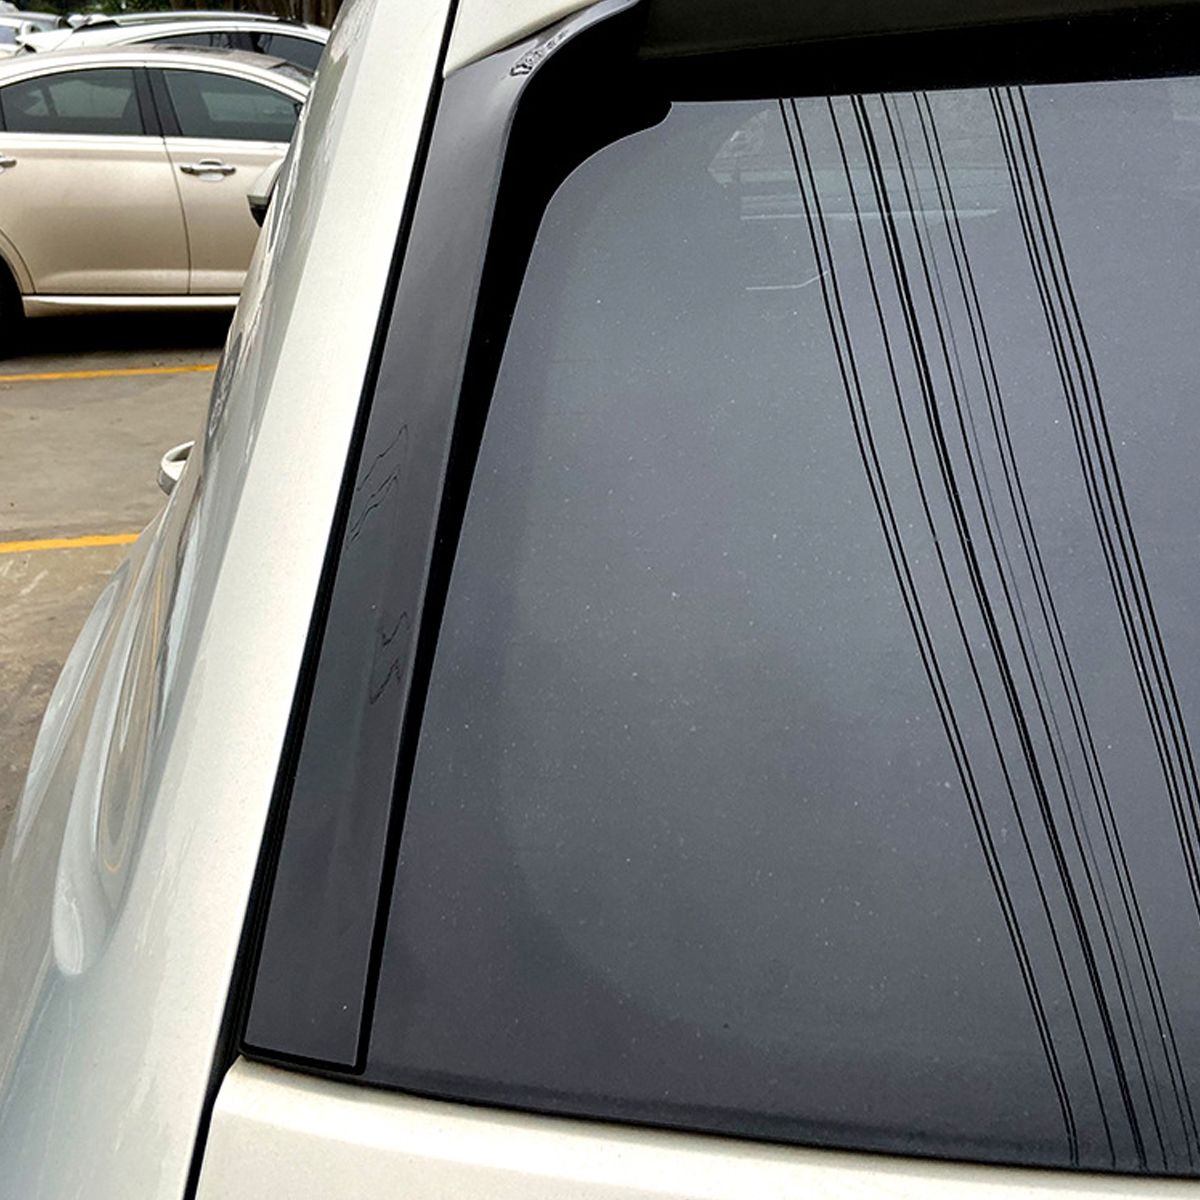 2Pcs-Car-Rear-Window-Side-Spoiler-Wing-Canards-Splitter-Glossy-Black-Fits-For-VW-Teramont-Atlas-2017-1656083